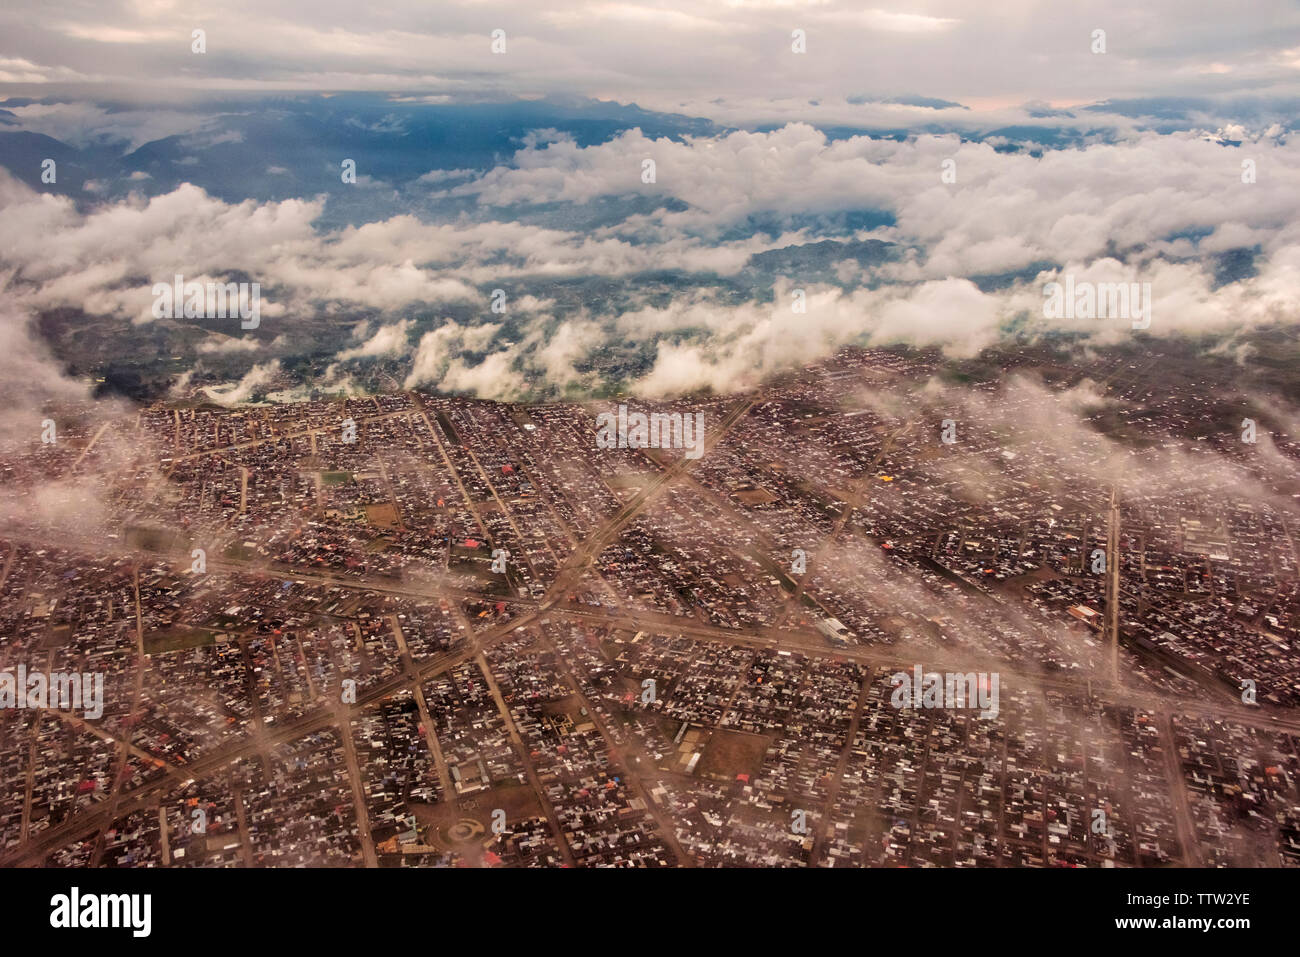 Aerial view of La Paz cityscape, Bolivia Stock Photo